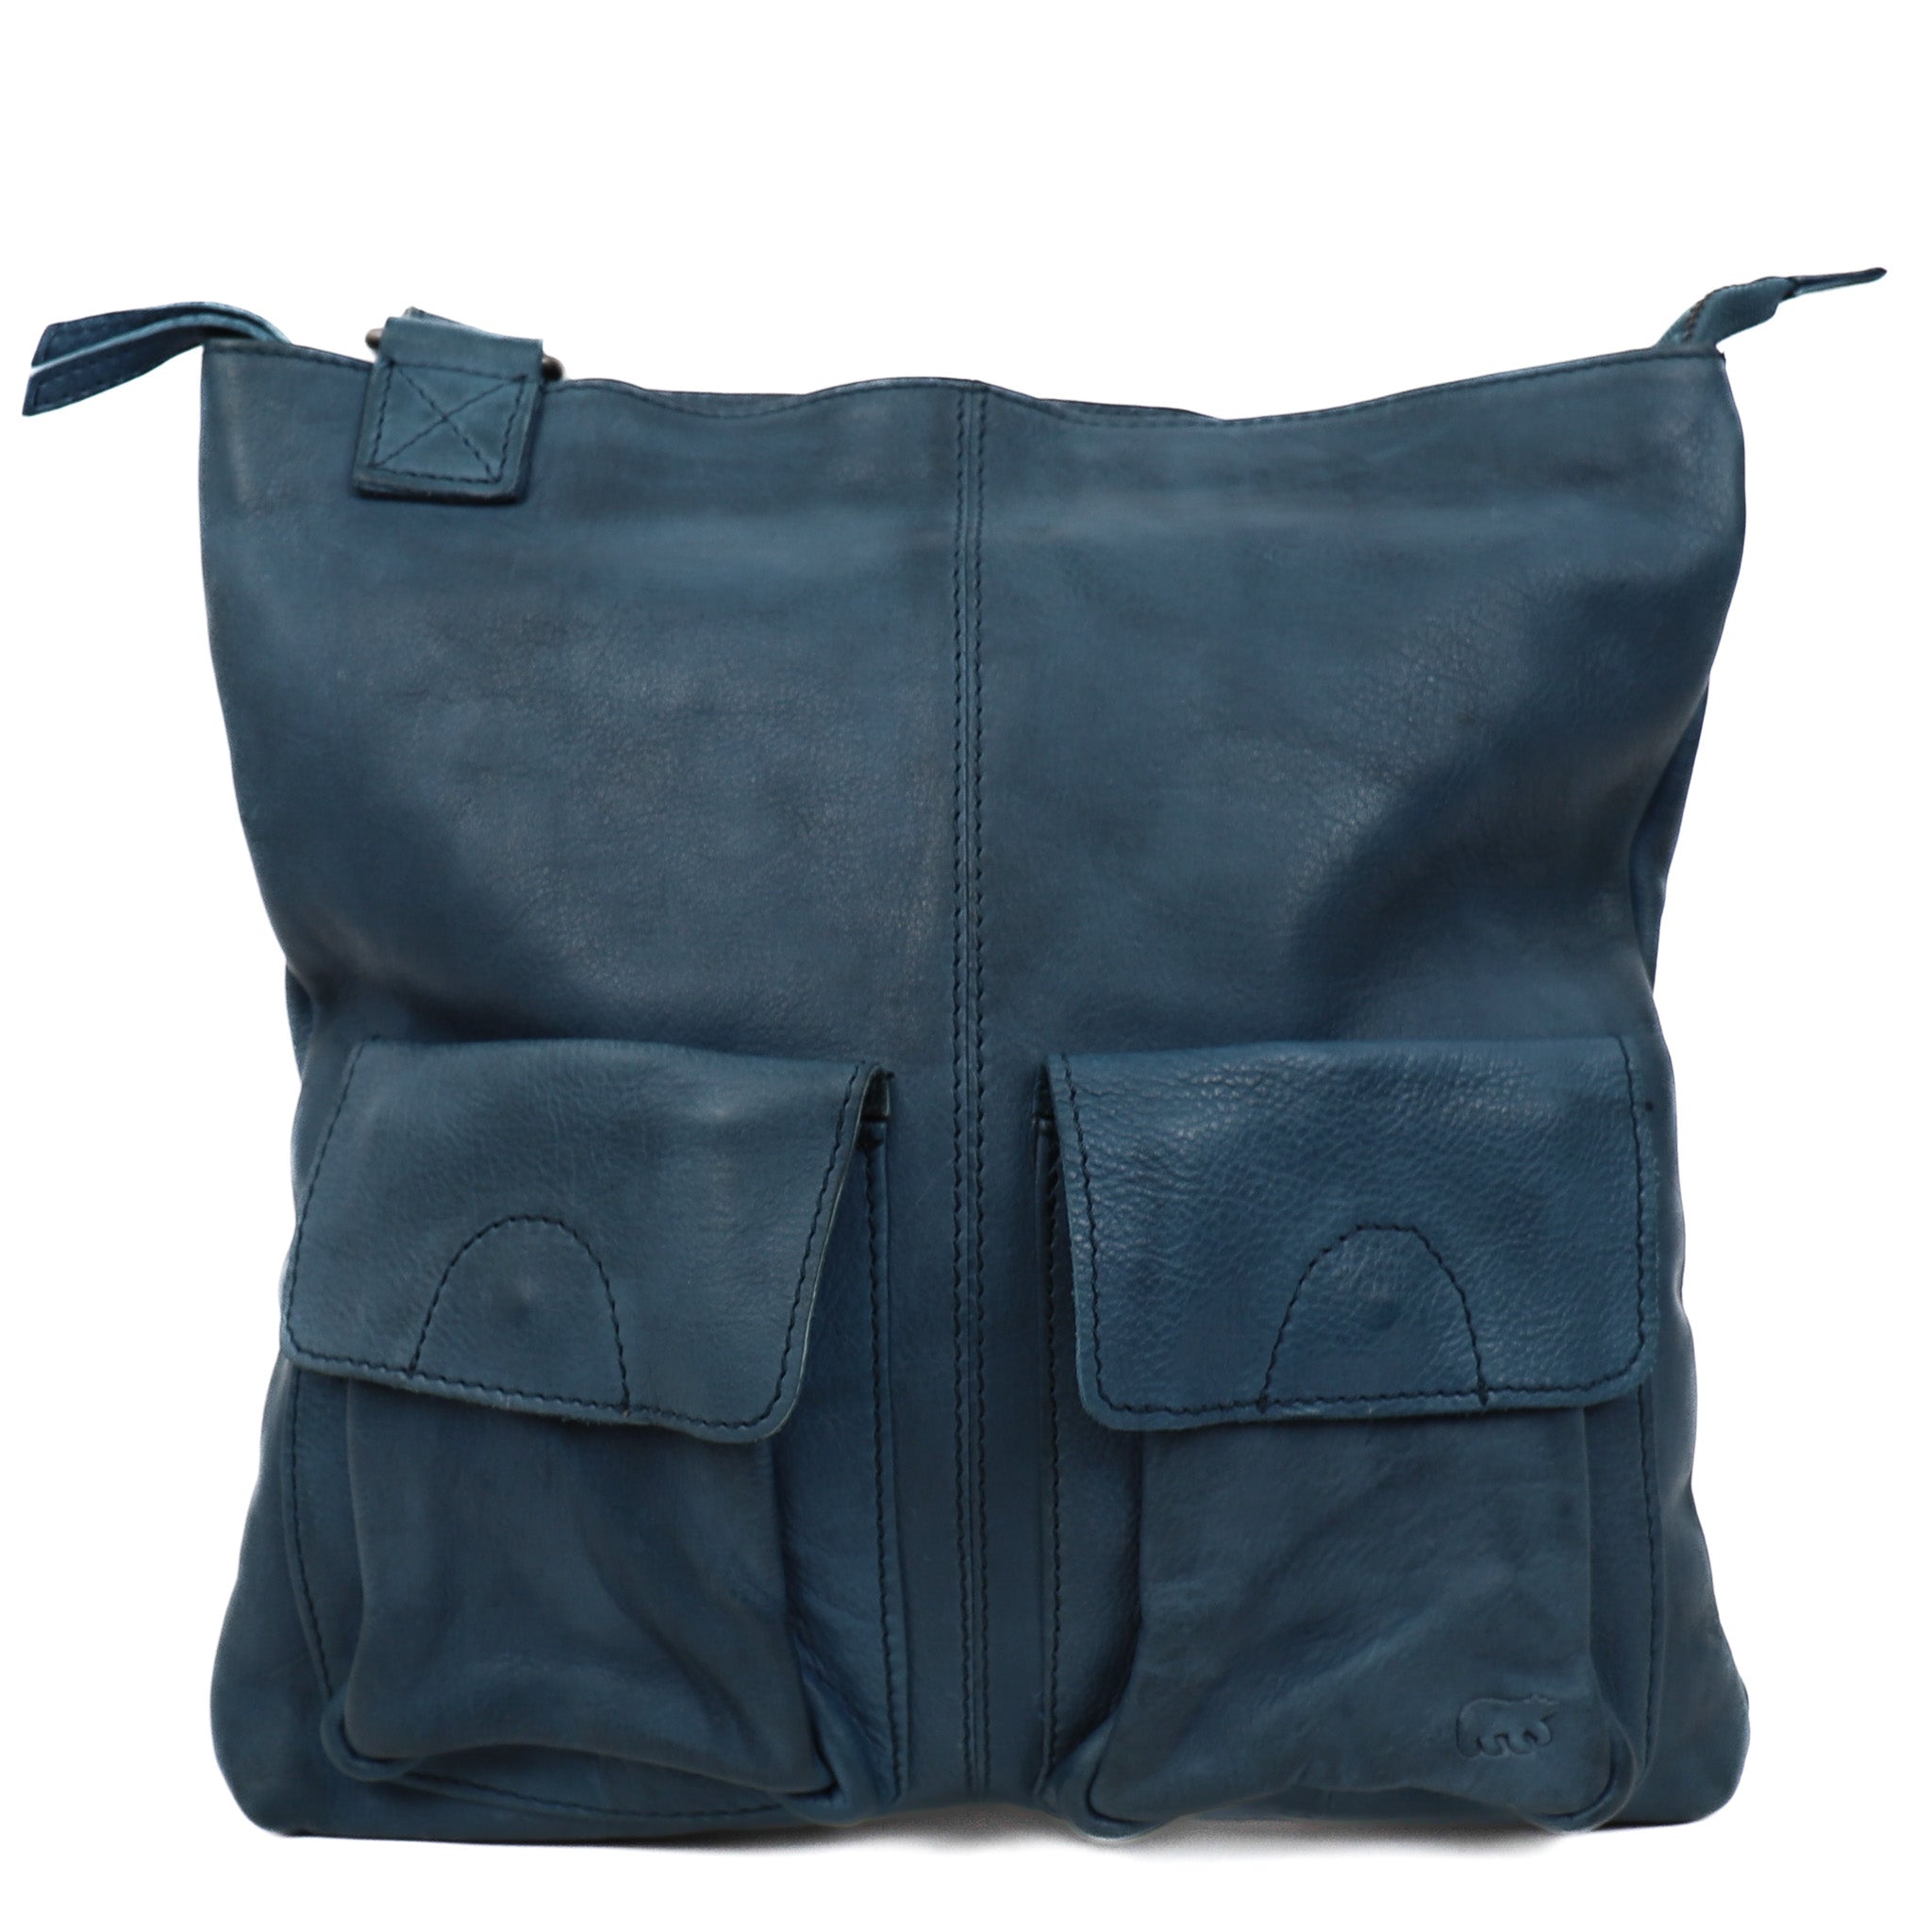 Shoulder bag 'Fabia' turquoise